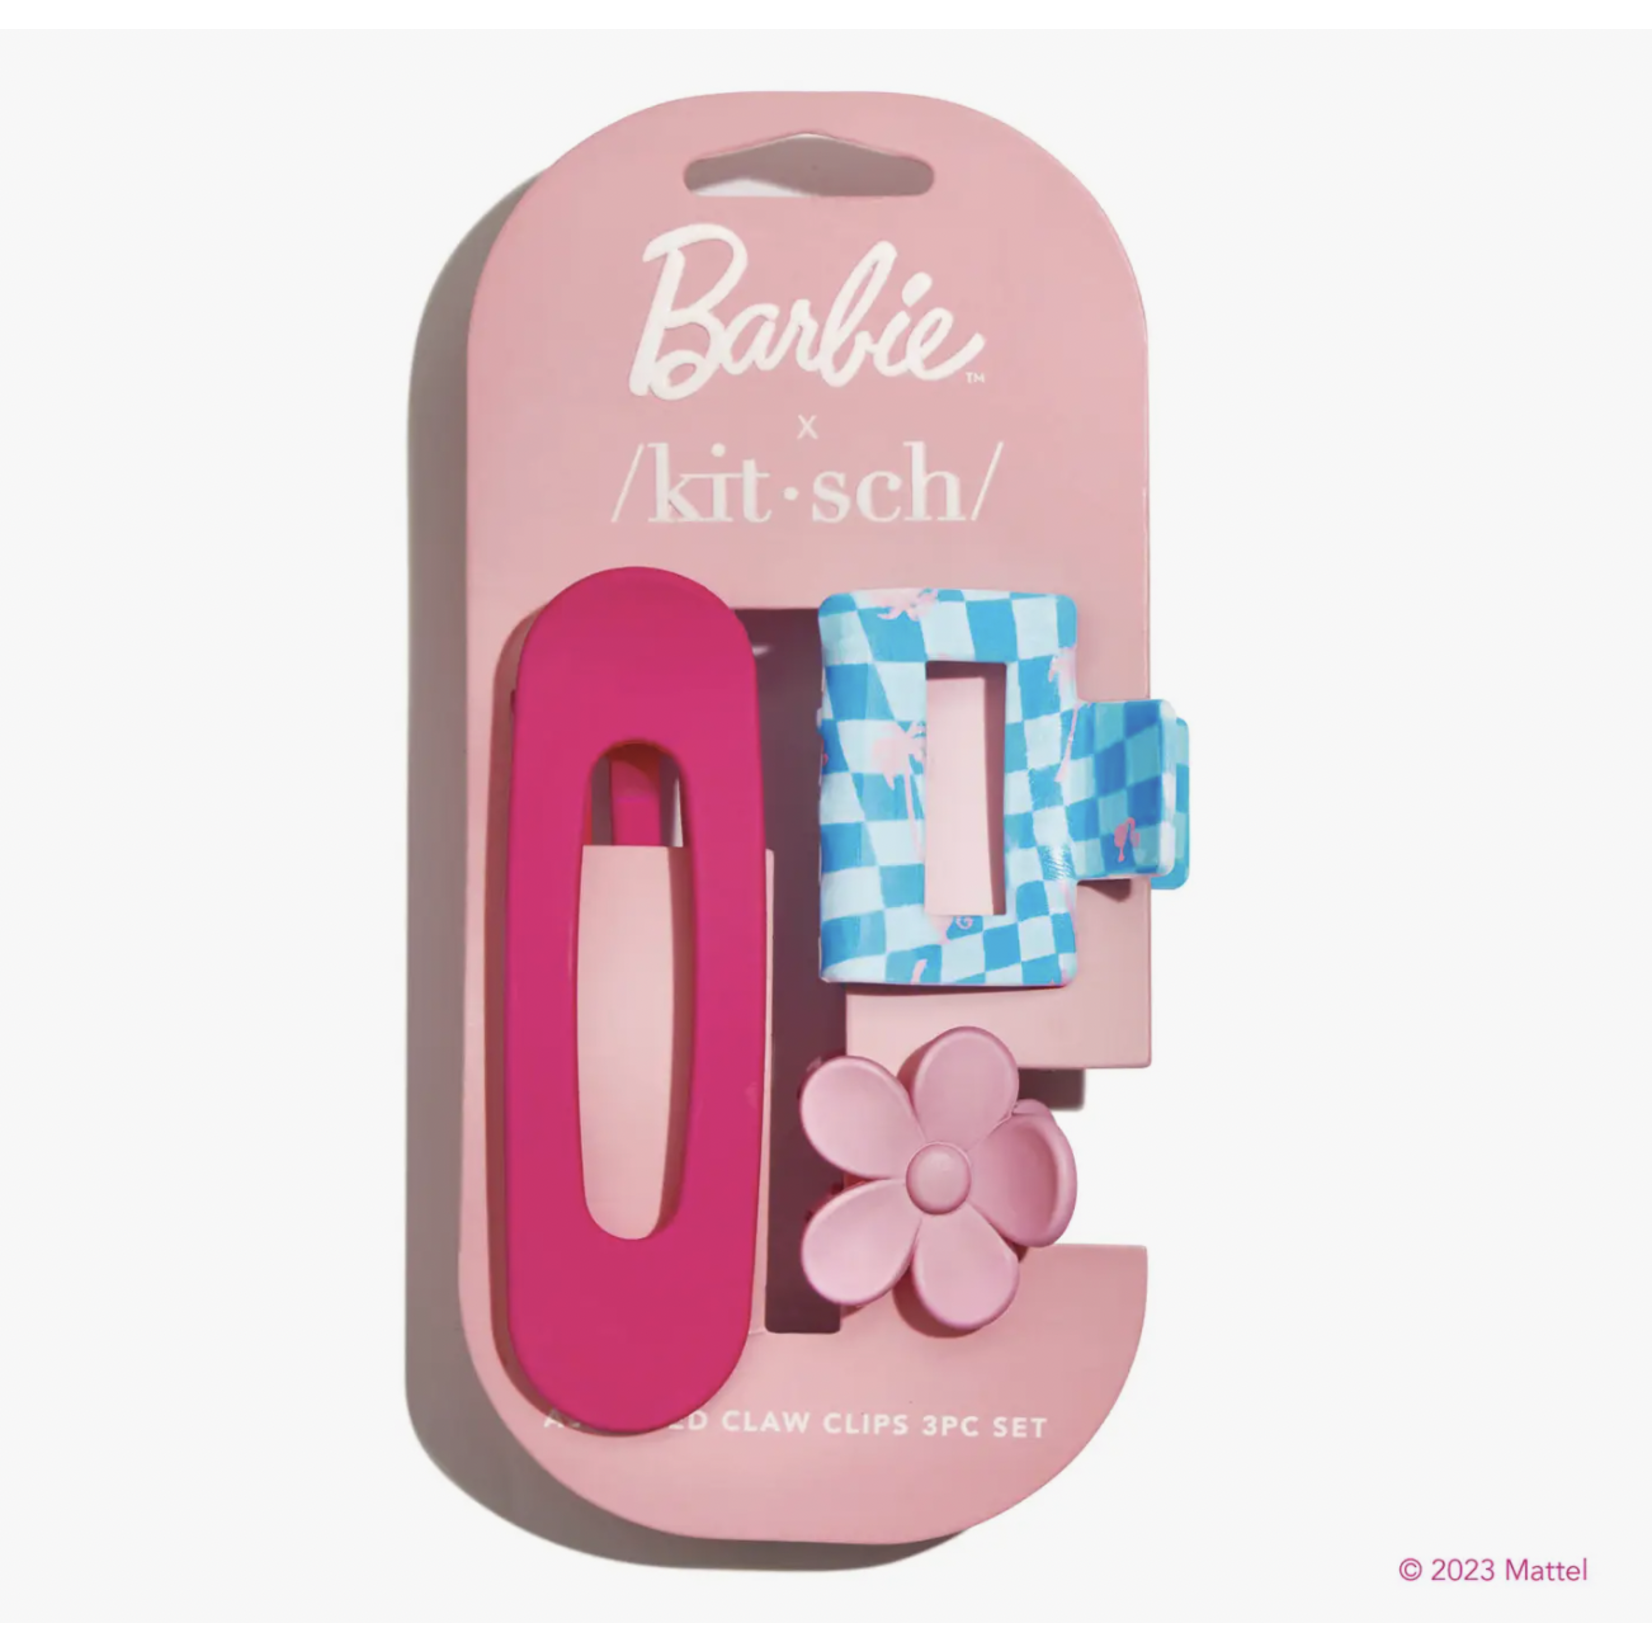 Kitsch Barbie x kitsch Assorted Claw Clip Set 3pc